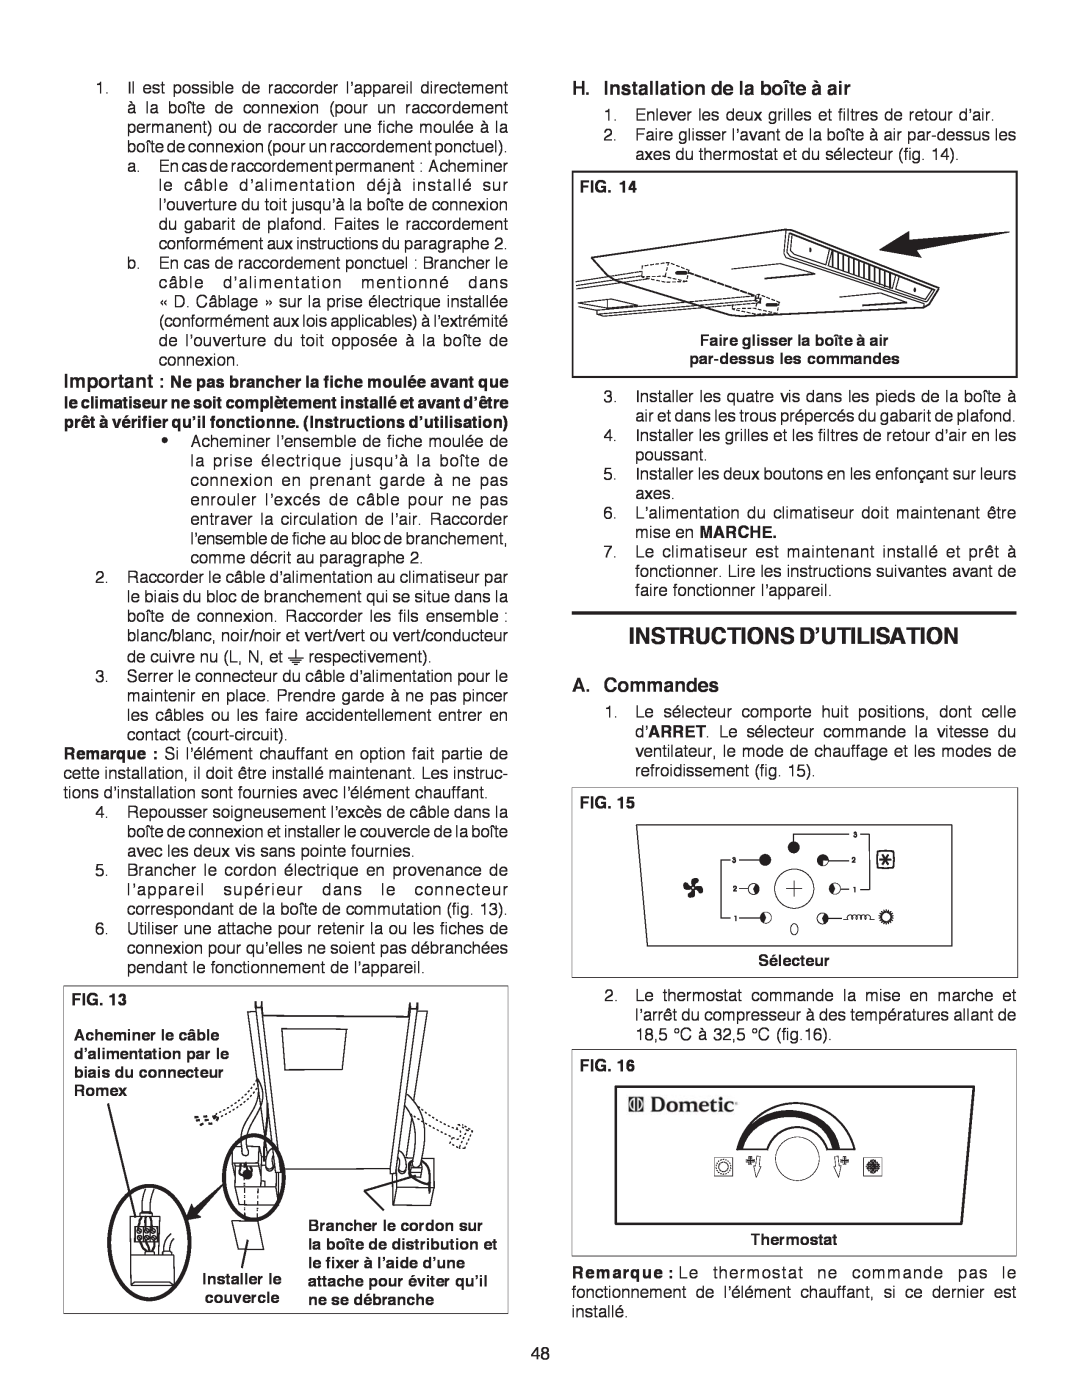 Dometic B3200 manual Instructions D’Utilisation, H.Installation de la boîte à air, A.Commandes, Fig 